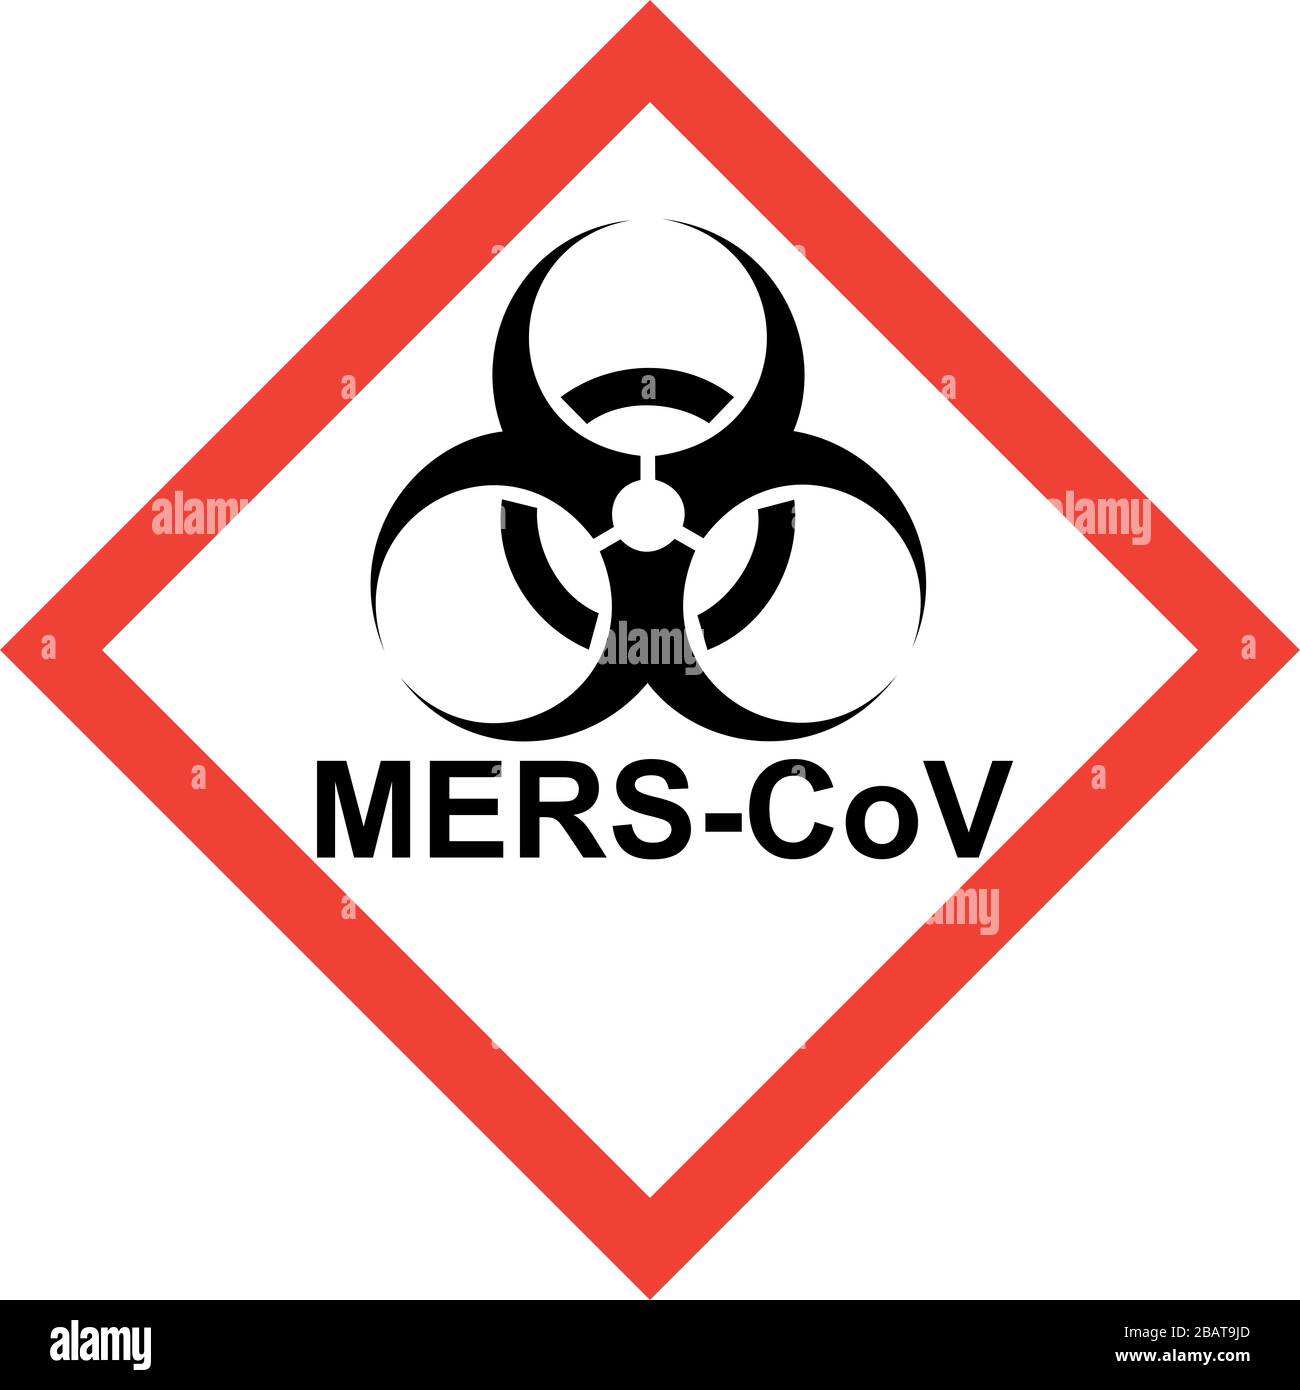 Señal roja de peligro con símbolo de peligro biológico y texto MERS-CoV Foto de stock